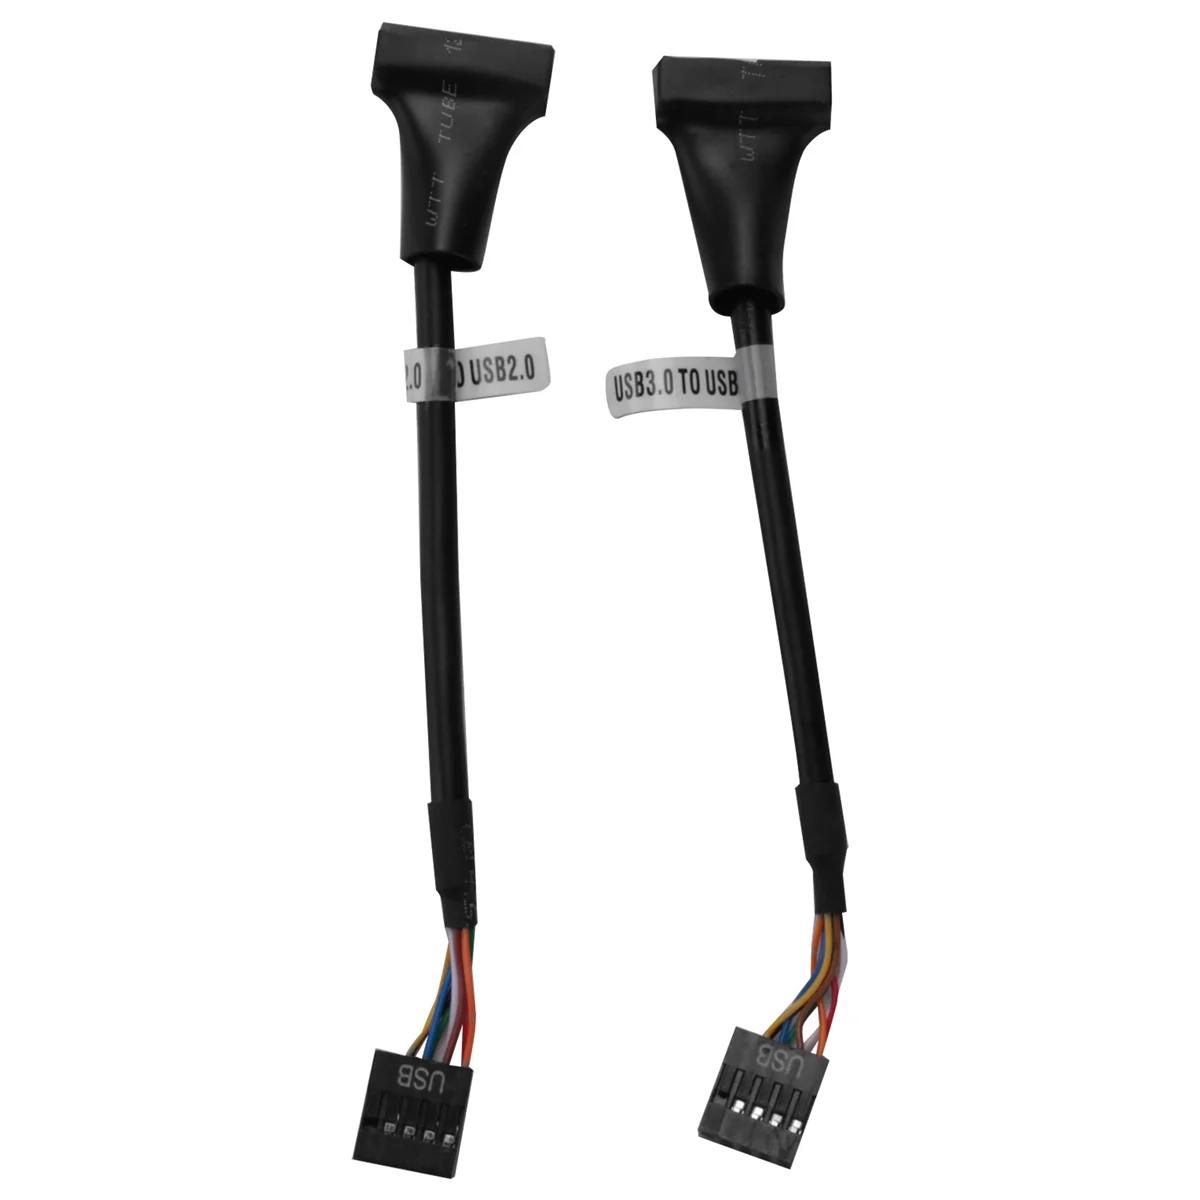 USB 2.0 USB 3.0 , USB 3.0-USB 2.0   ̺, 19  USB3.0 -9  USB2.0 , 2 